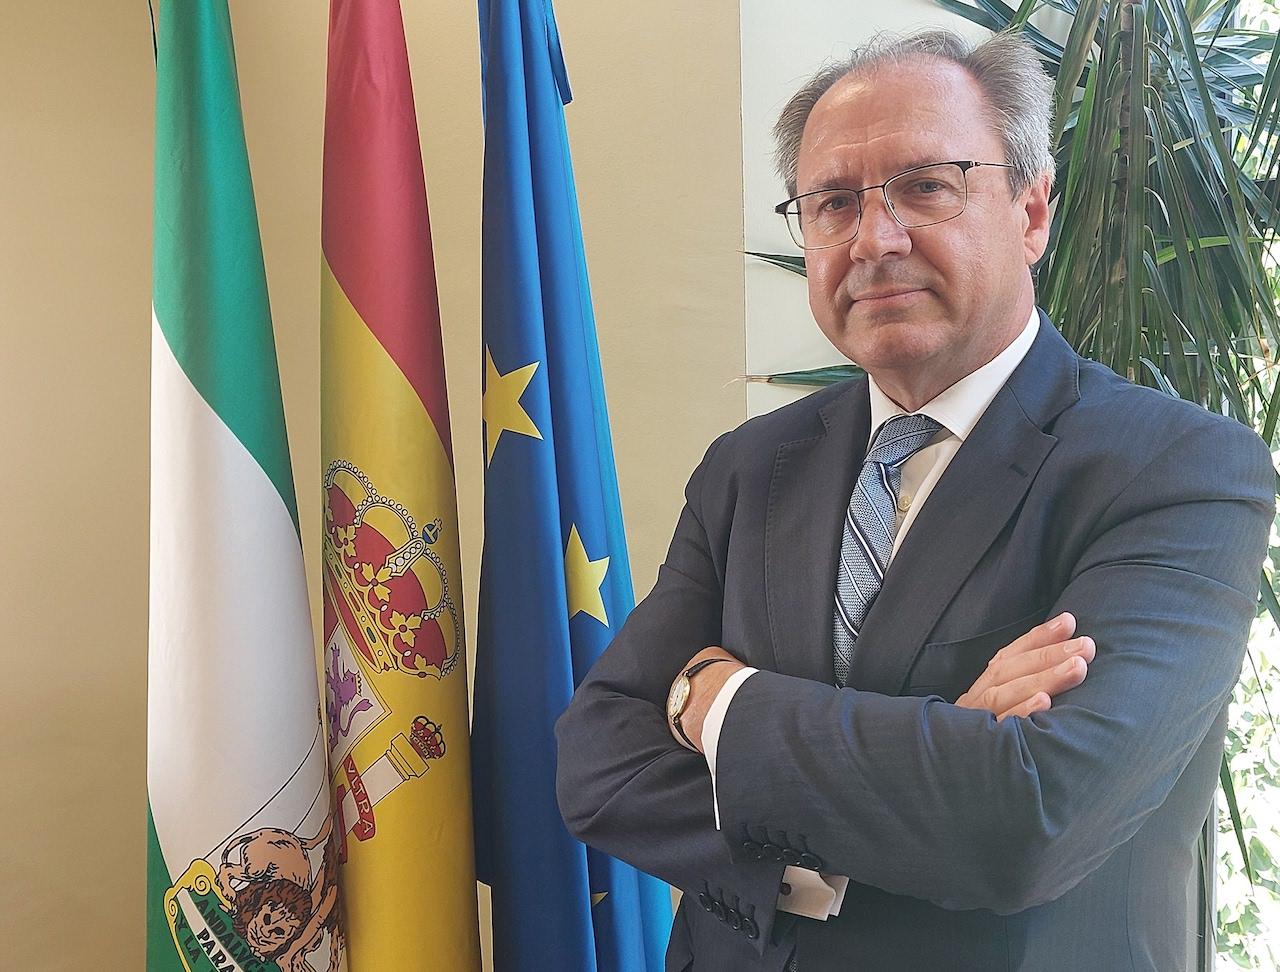 Alfonso Lucio-Villegas Cámara, nuevo director general de VEIASA en sustitución de Francisco José Delgado Aguilera